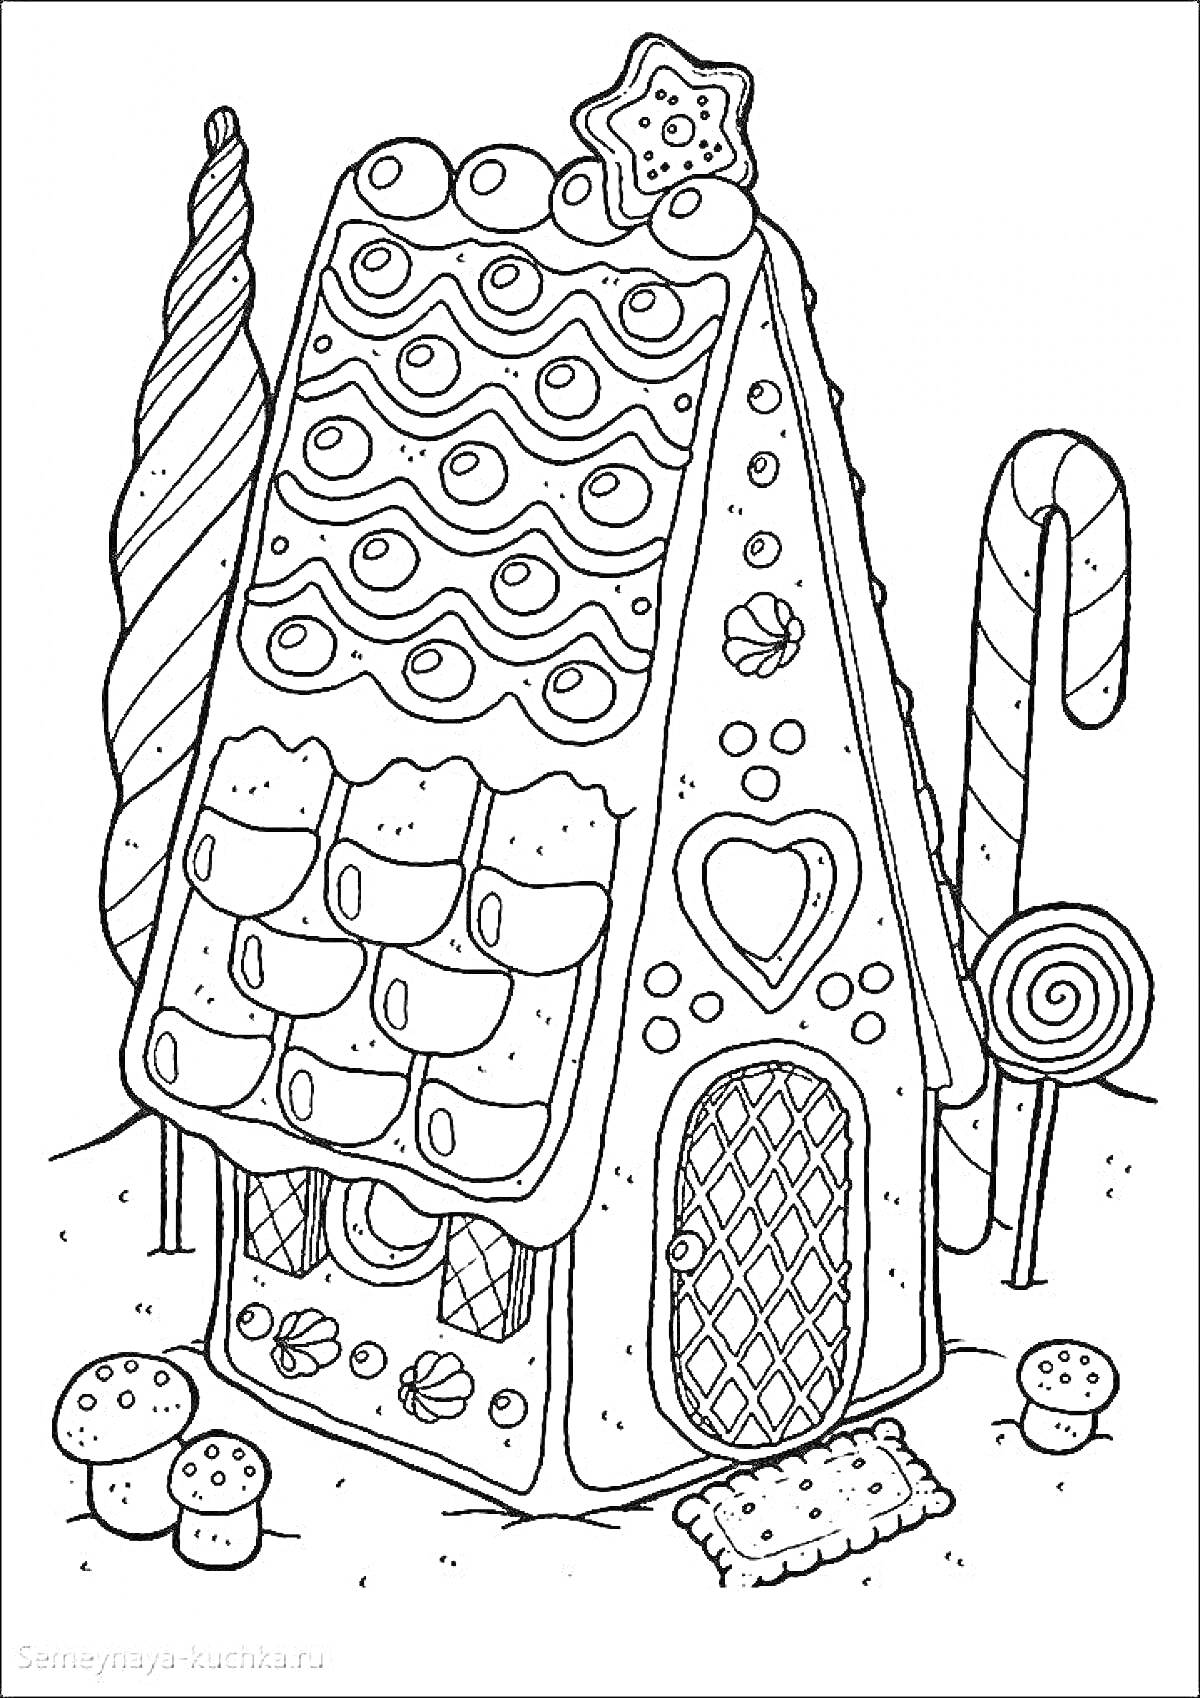 Раскраска Пряничный домик с дверью и окном, украшенный льдинками, конфетами, пряниками и звездочкой на крыше, рядом с леденцами, деревцами и грибочками